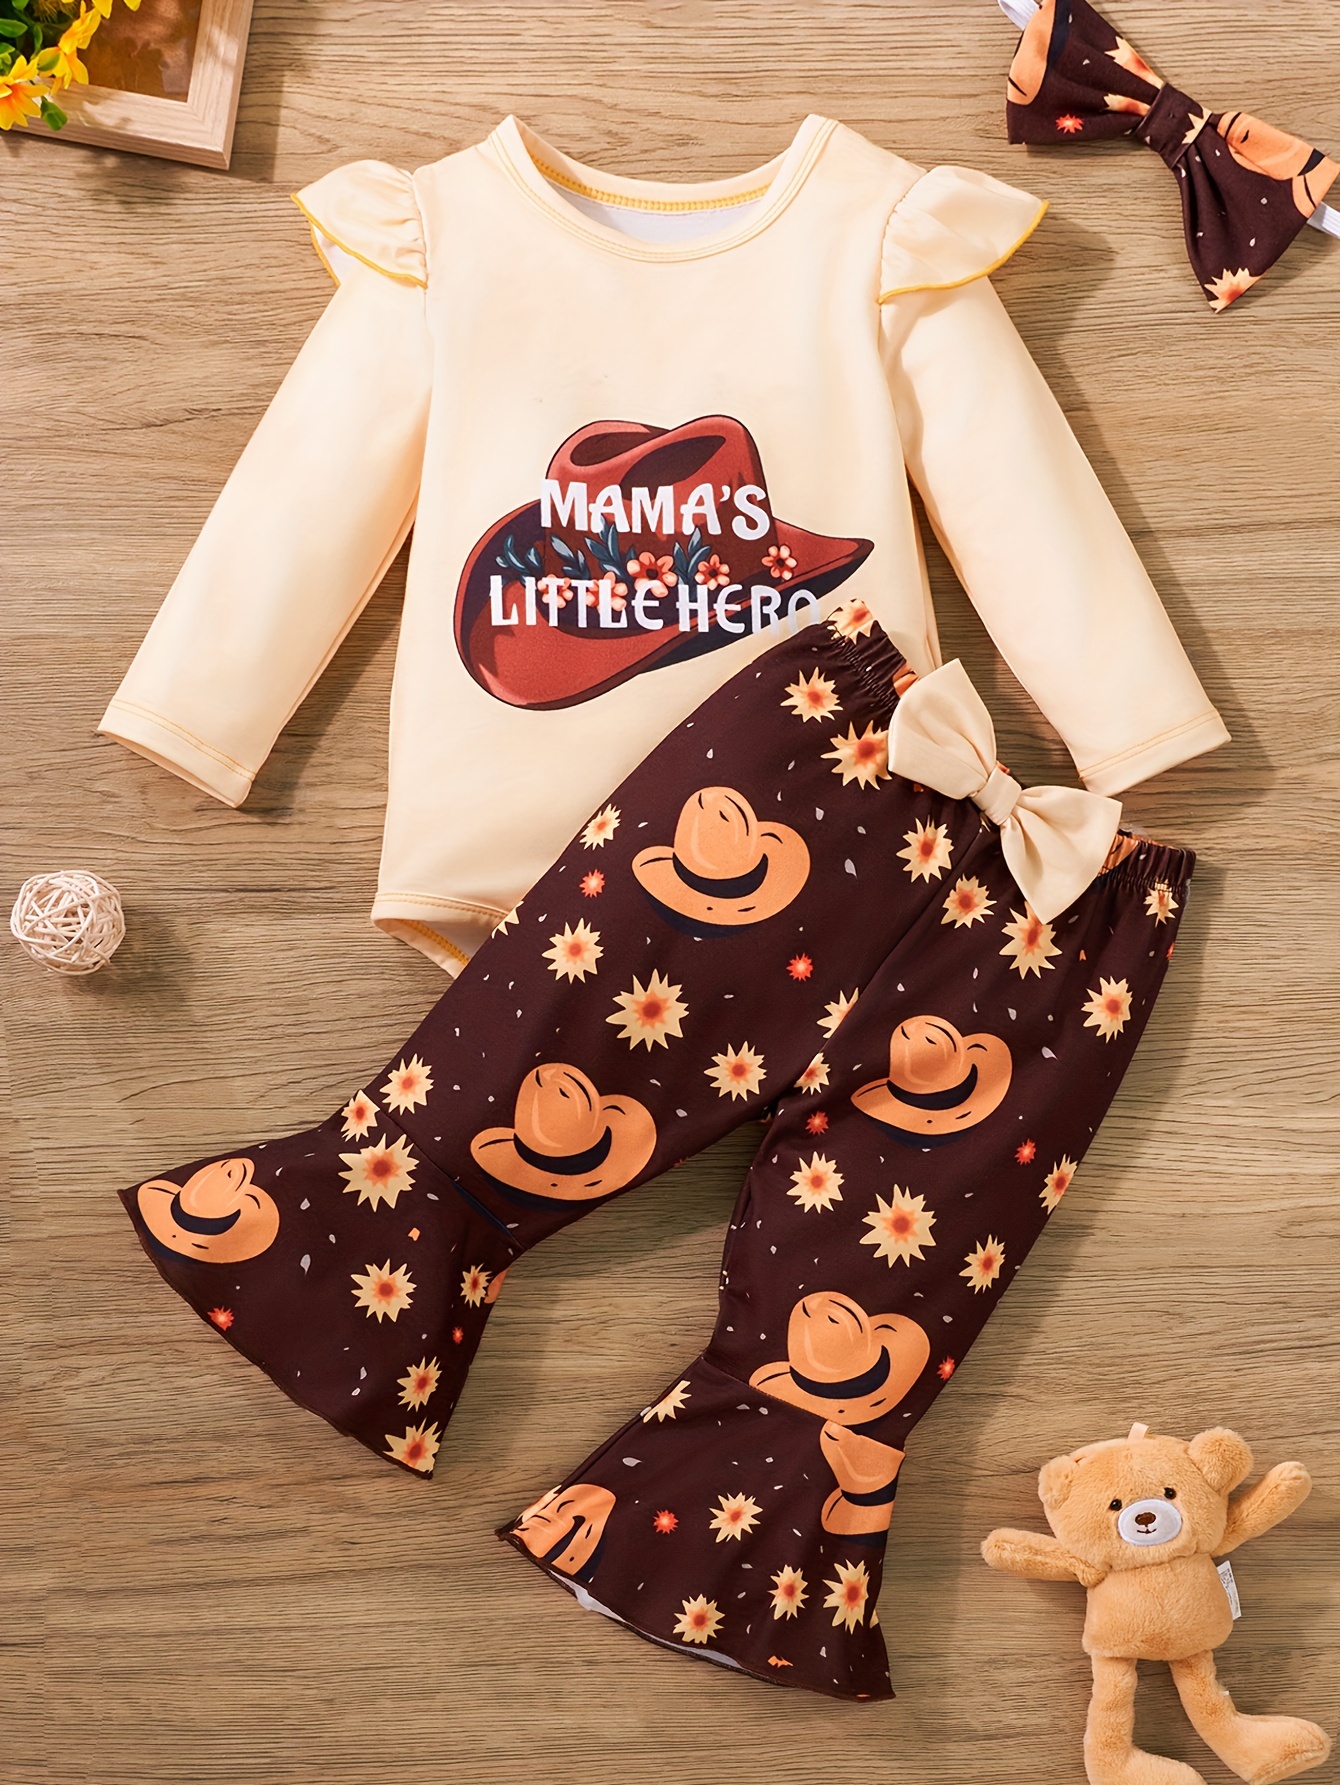 Pantalón vaquero para niño - Moda niños - Minis Baby&Kids shop online